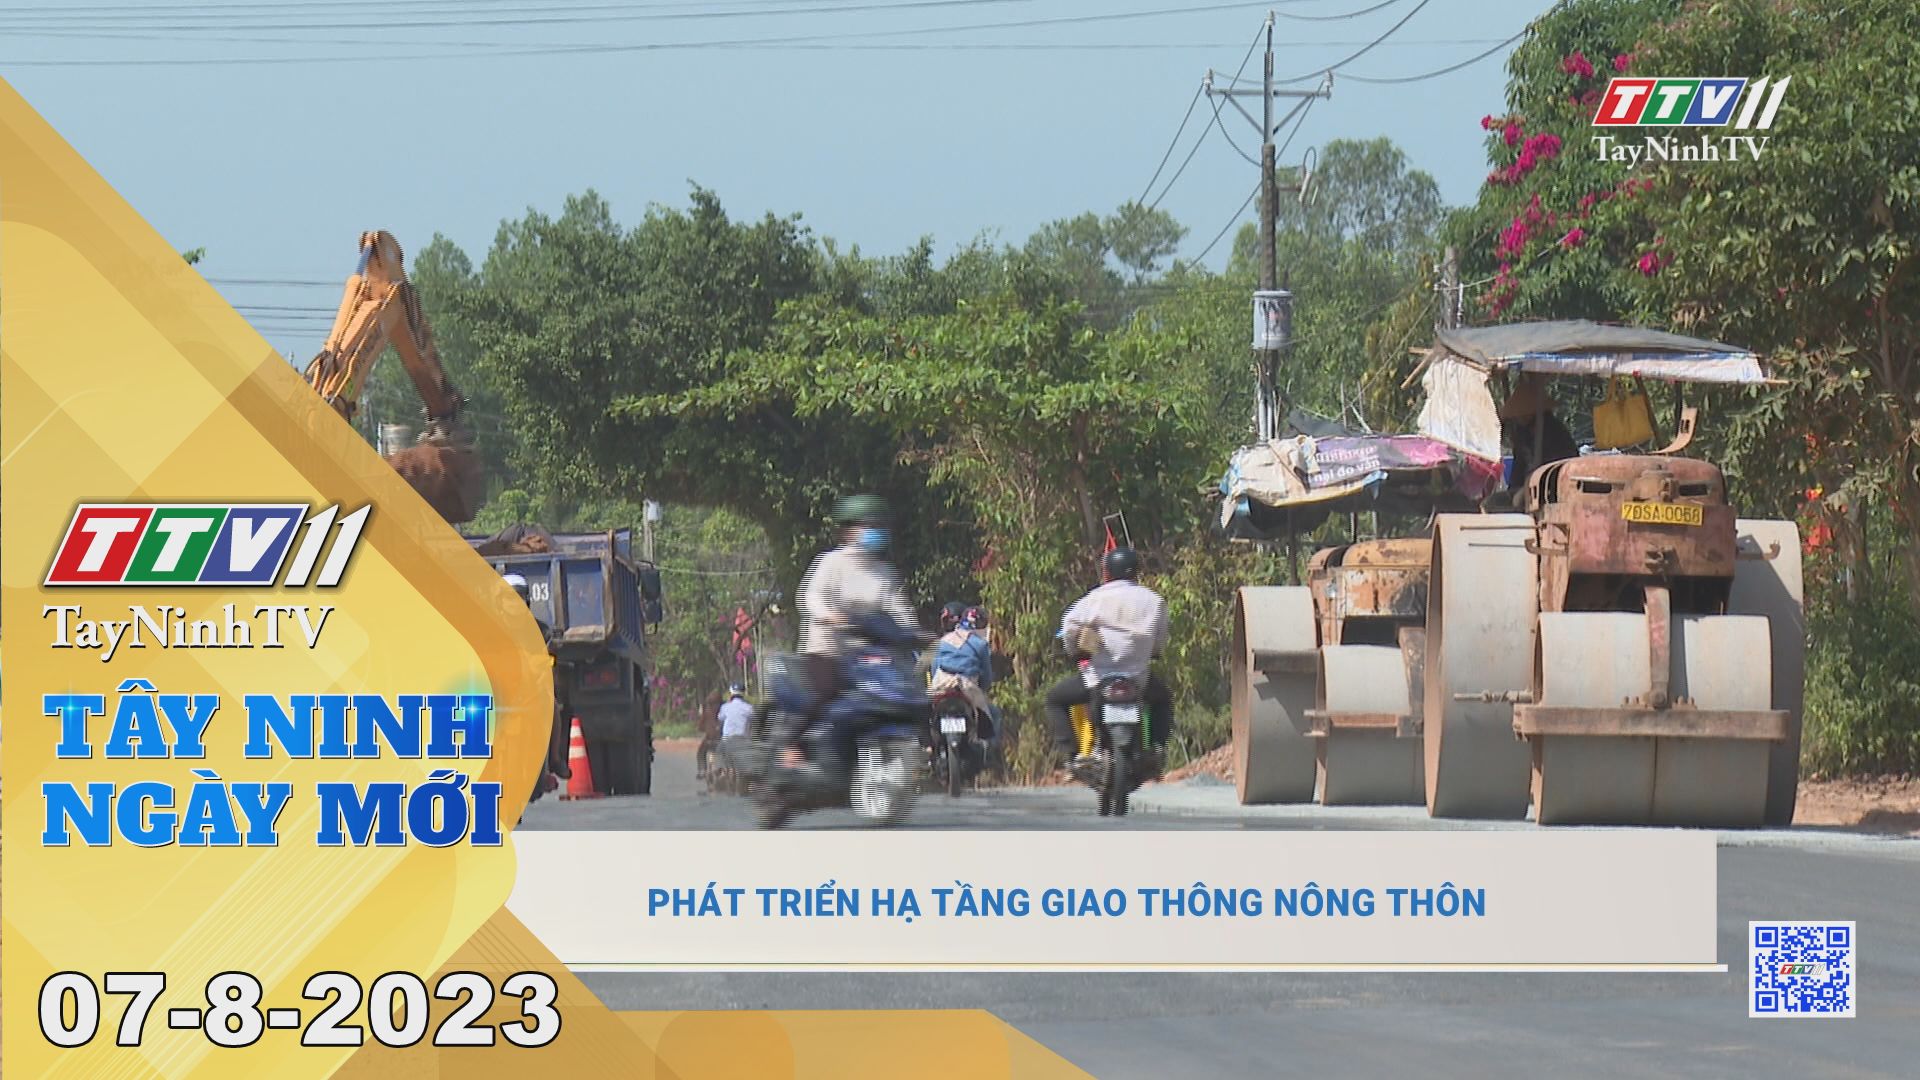 Tây Ninh ngày mới 07-8-2023 | Tin tức hôm nay | TayNinhTV